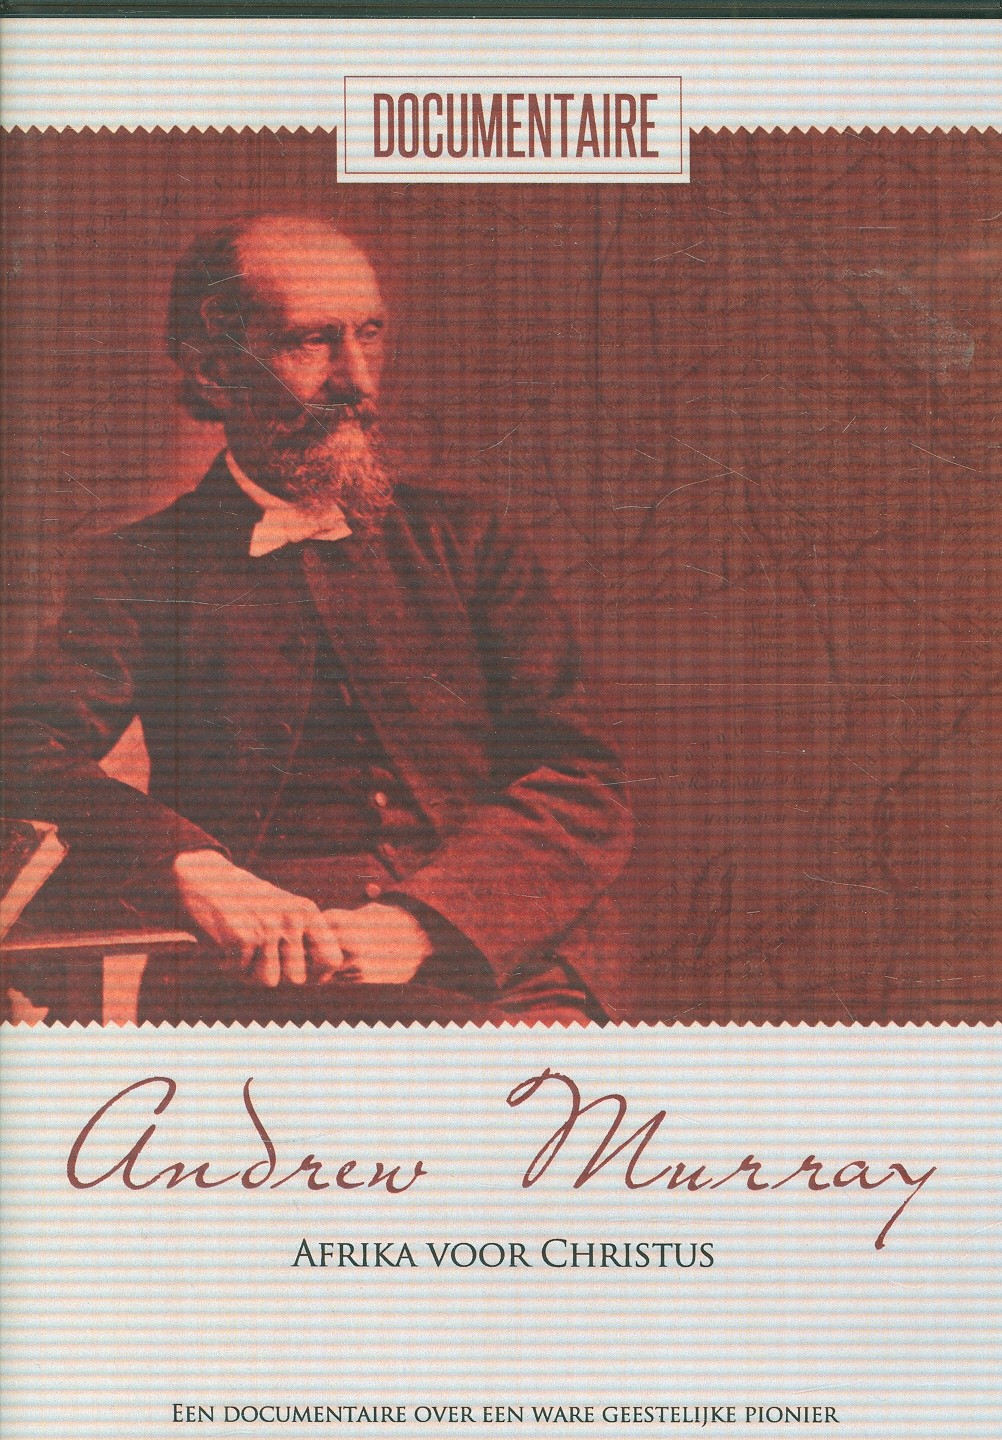 Andrew Murray, Afrika Voor Christus